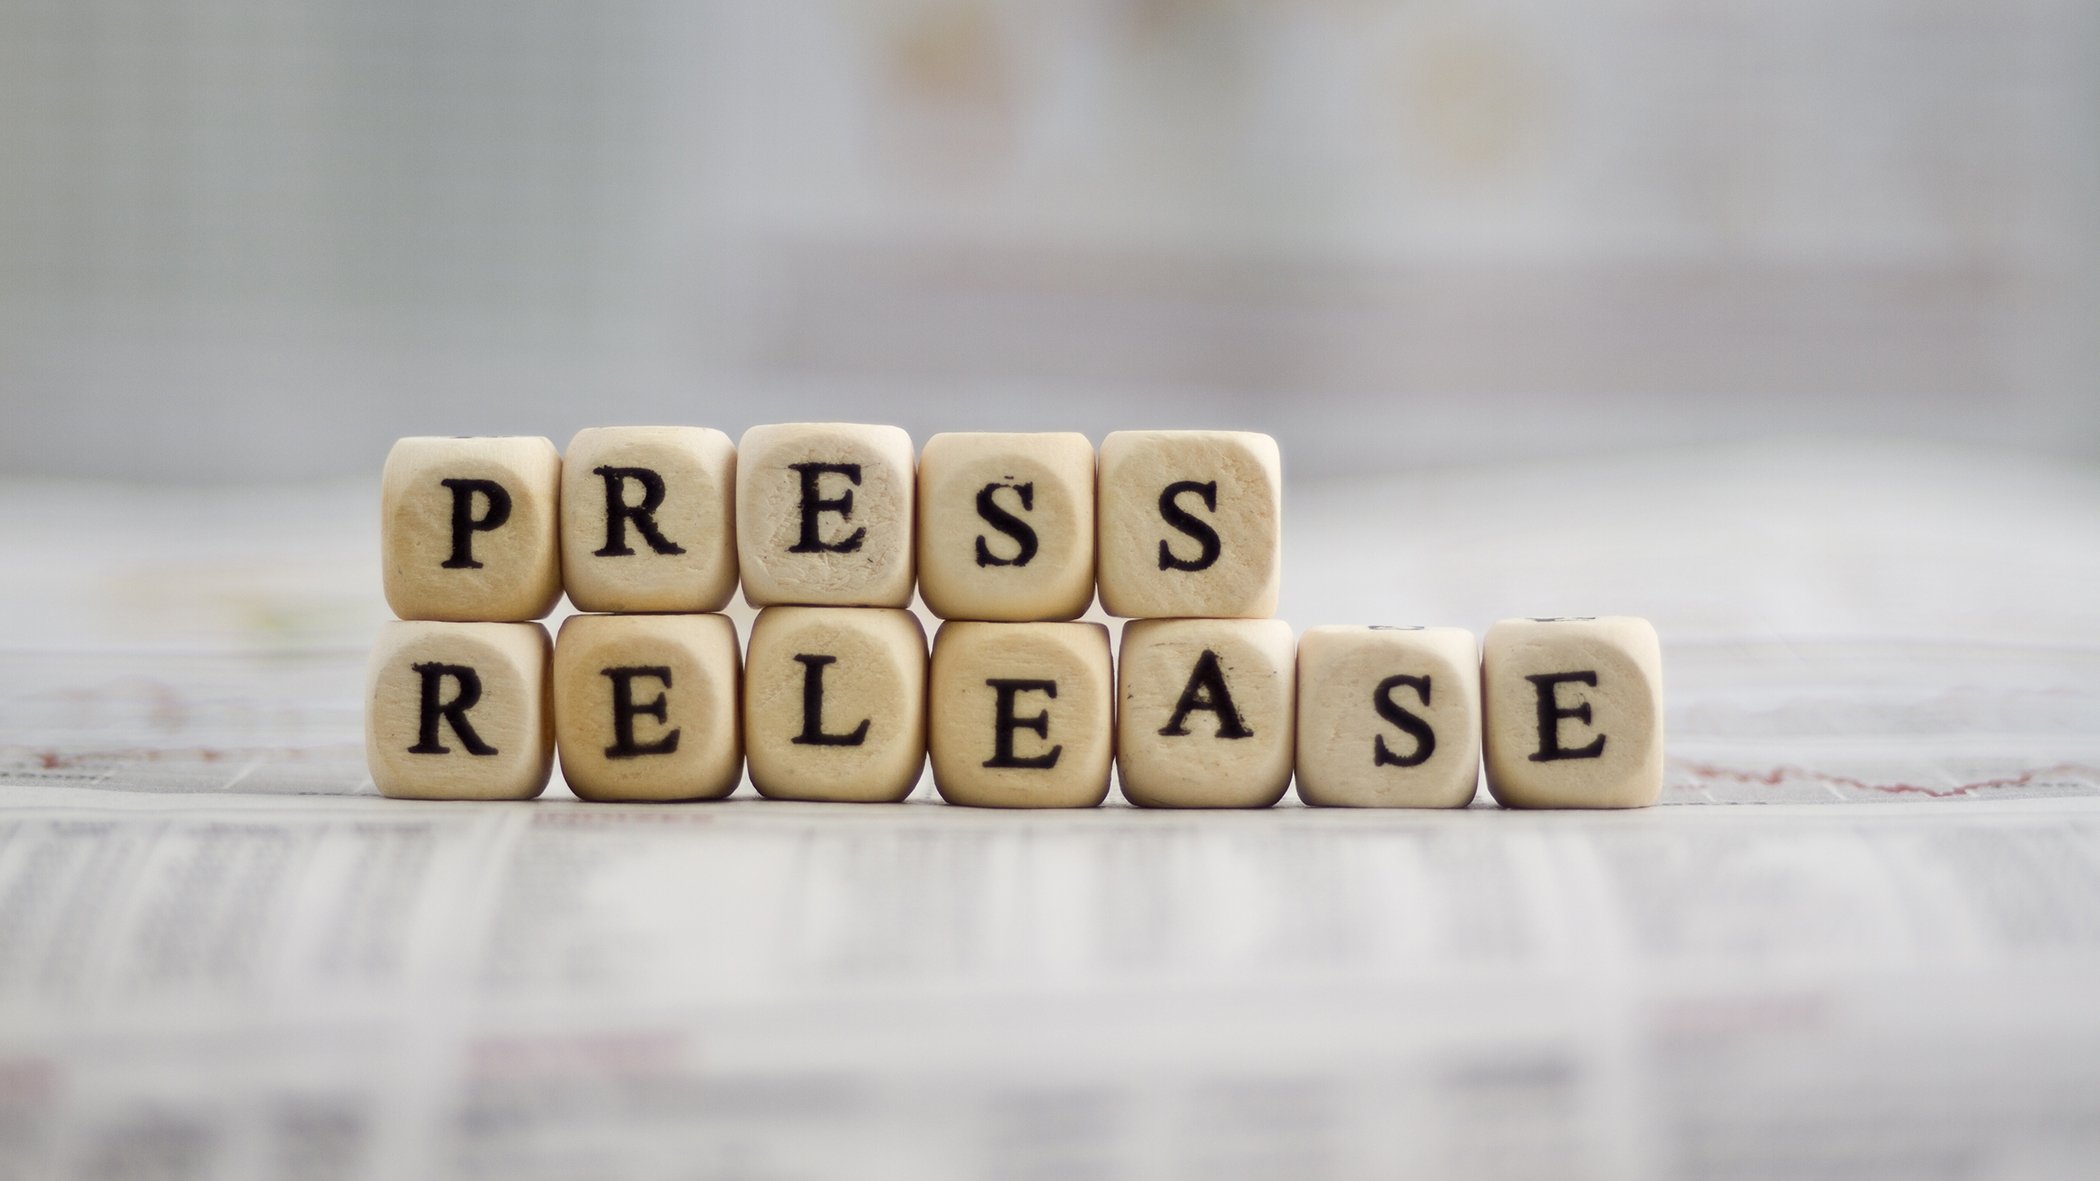 Press release wooden blocks